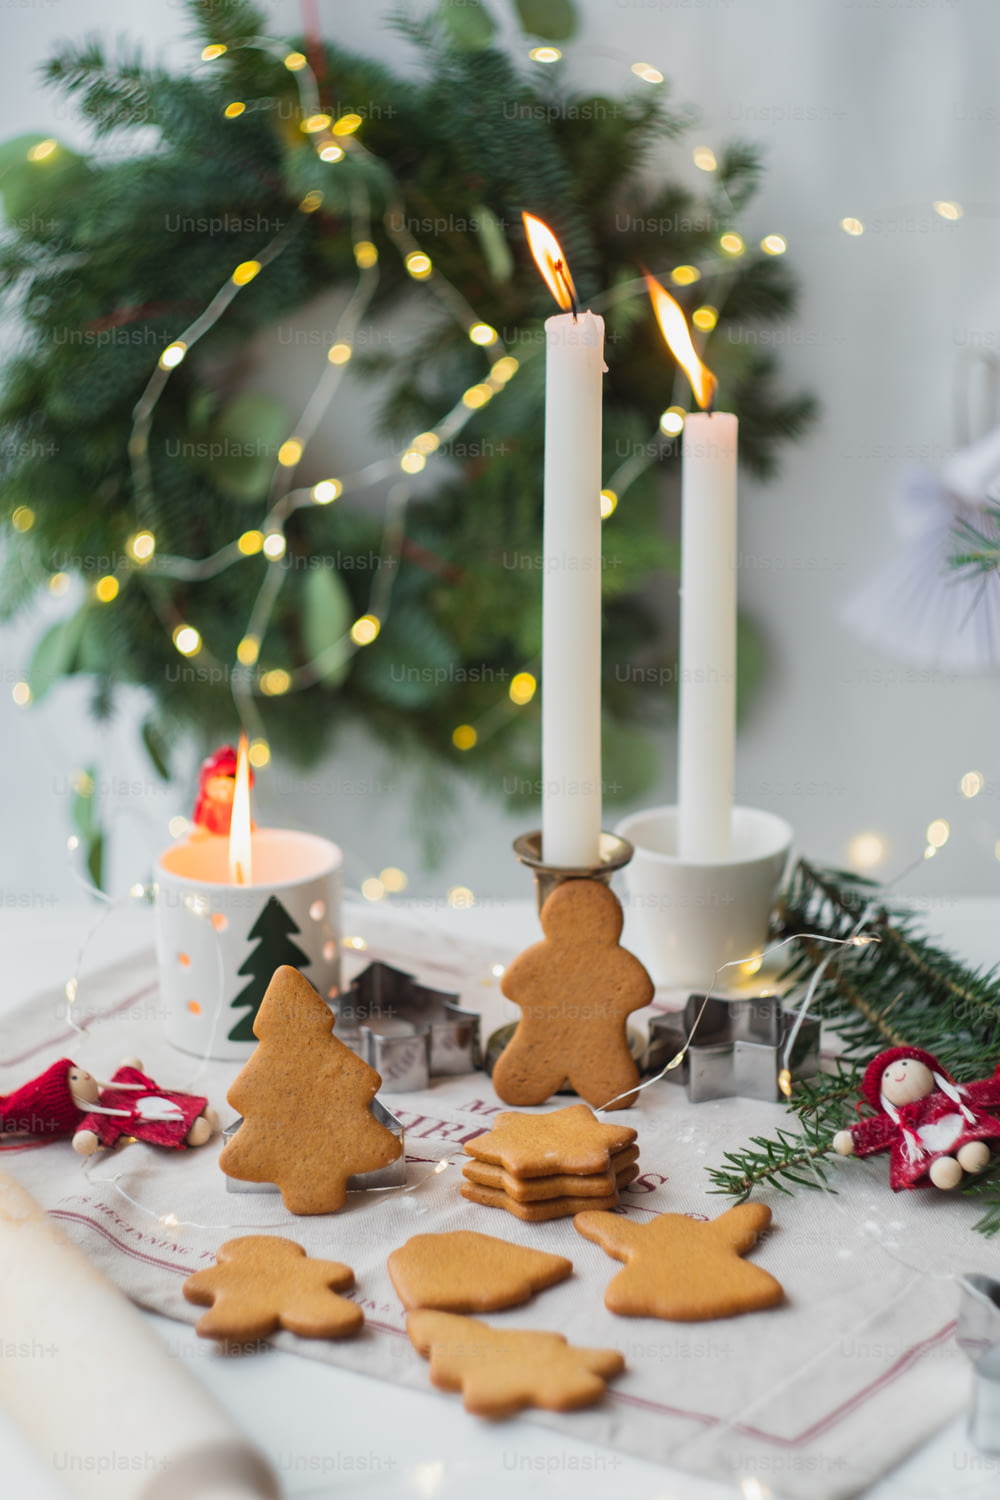 불이 켜진 촛불 옆에 �많은 쿠키가 얹힌 테이블